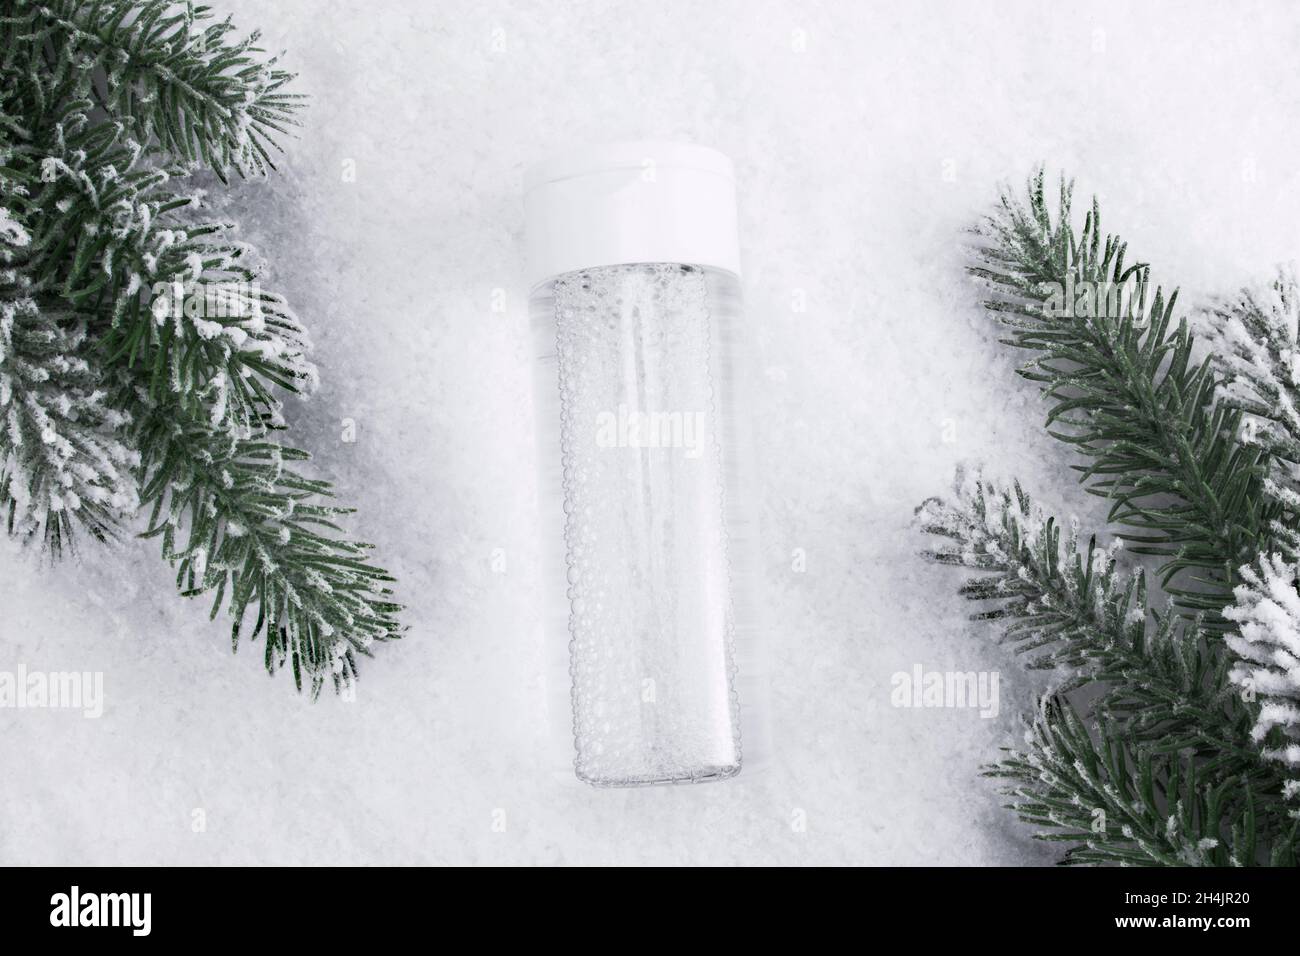 Produit de soin de la peau posé à plat sur fond de neige.Nettoyant pour le visage ou bouteille d'eau micellaire avec branches décoratives d'un arbre de Noël, firbackdro Banque D'Images